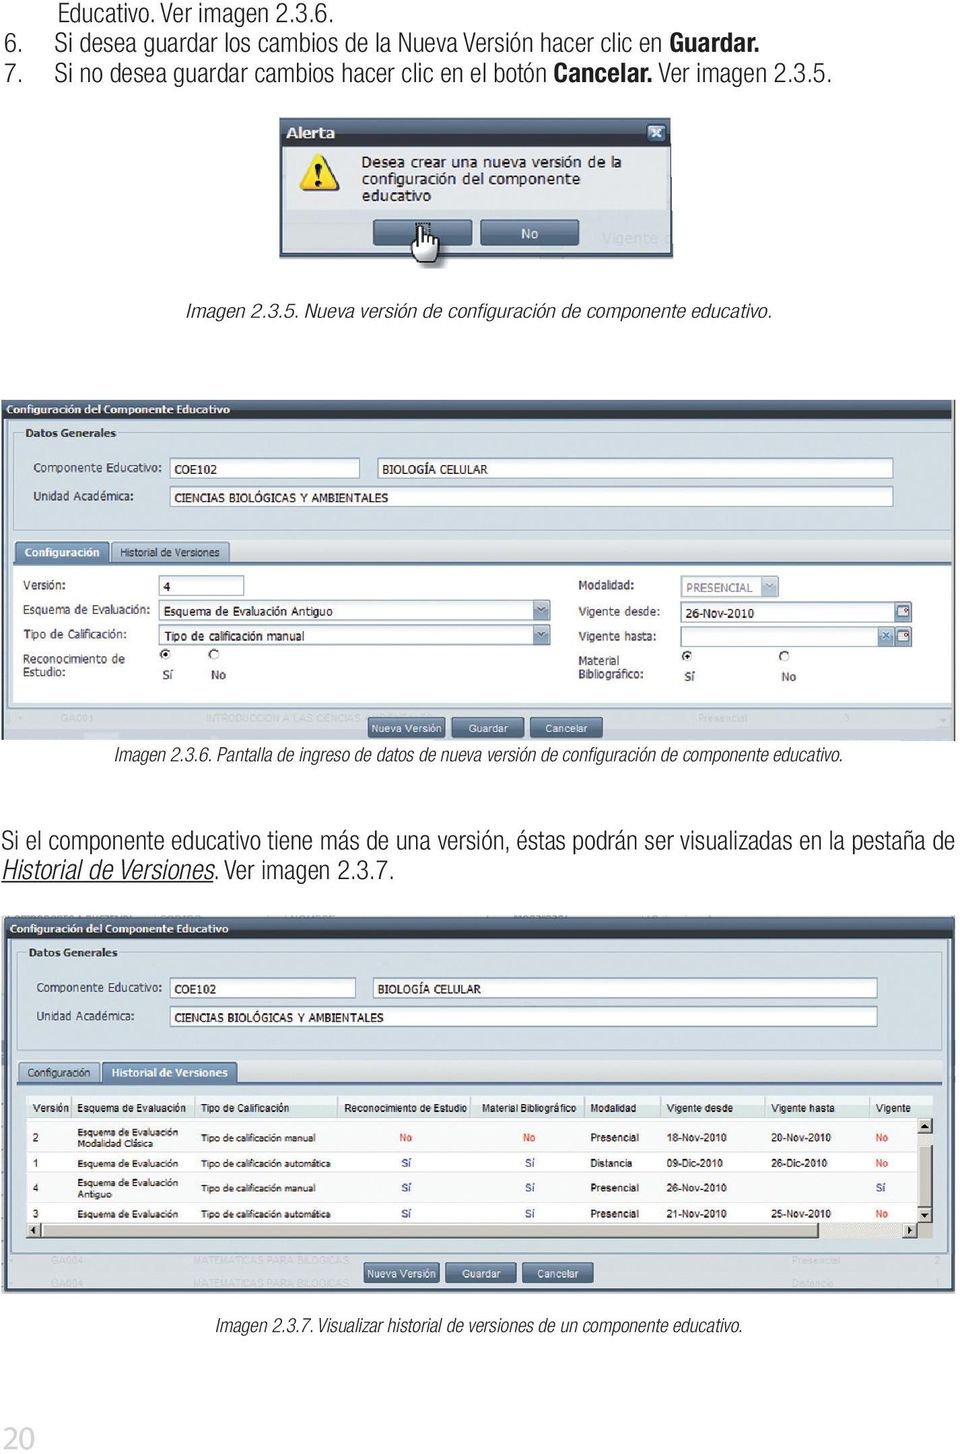 Imagen 2.3.6. Pantalla de ingreso de datos de nueva versión de configuración de componente educativo.